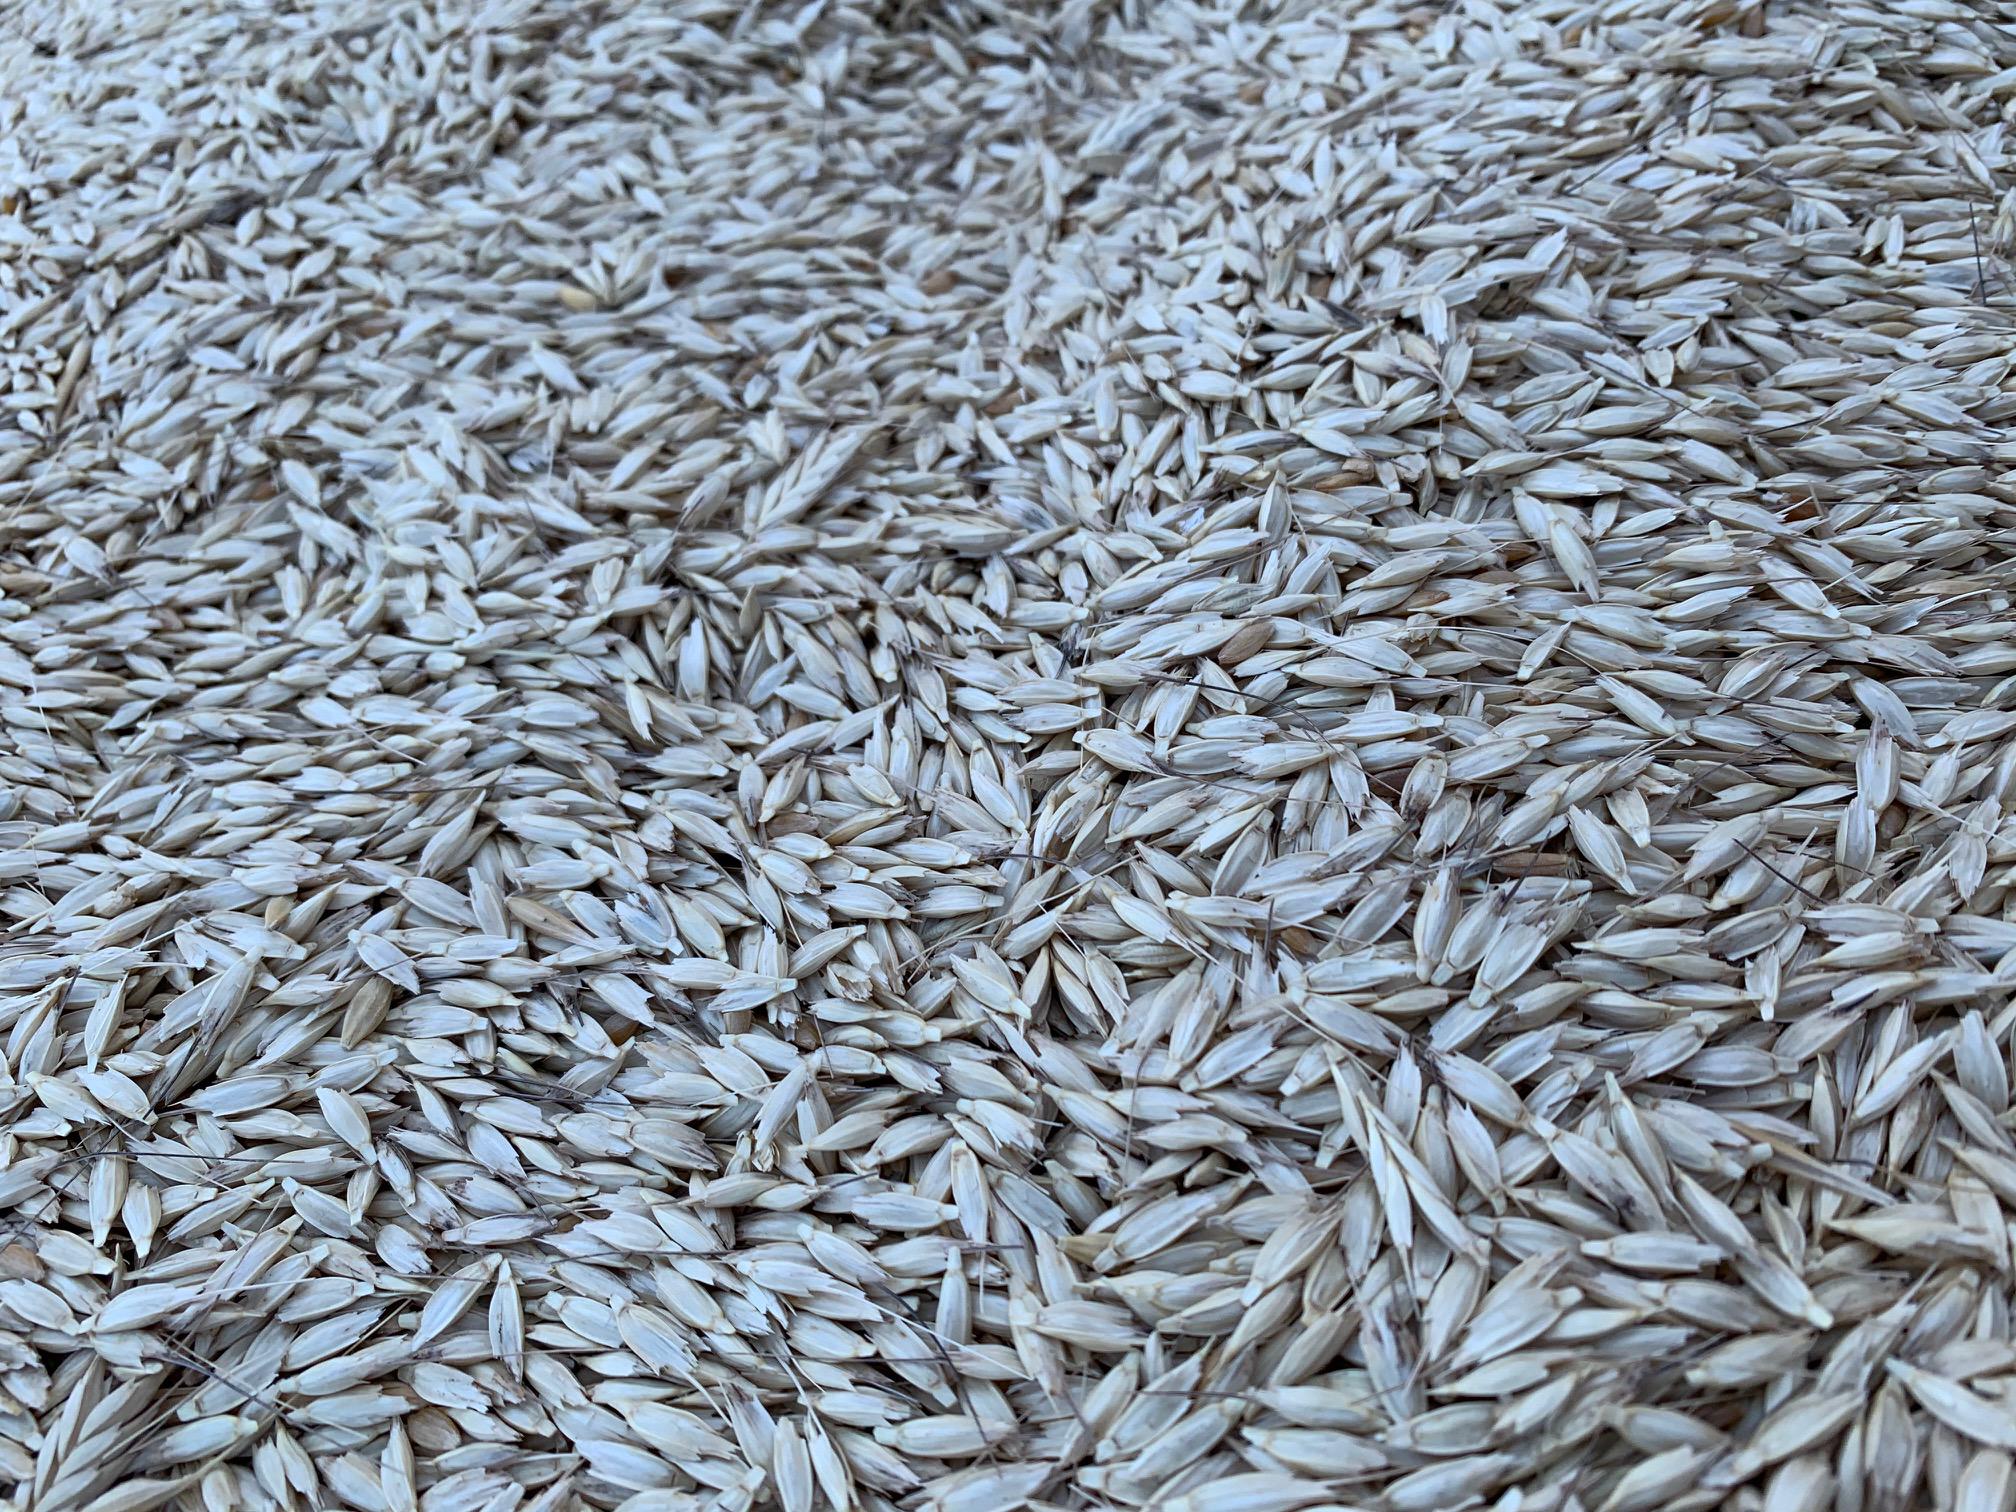 Buğday (Ekmeklik) tohumu - Ümit Erdoğan tarafından verilen satılık buğday (ekmeklik) tohumu ilanını ve diğer satılık buğday (ekmeklik) tohumu ilanlarını tarimziraat.com adresinde bulabilirsiniz